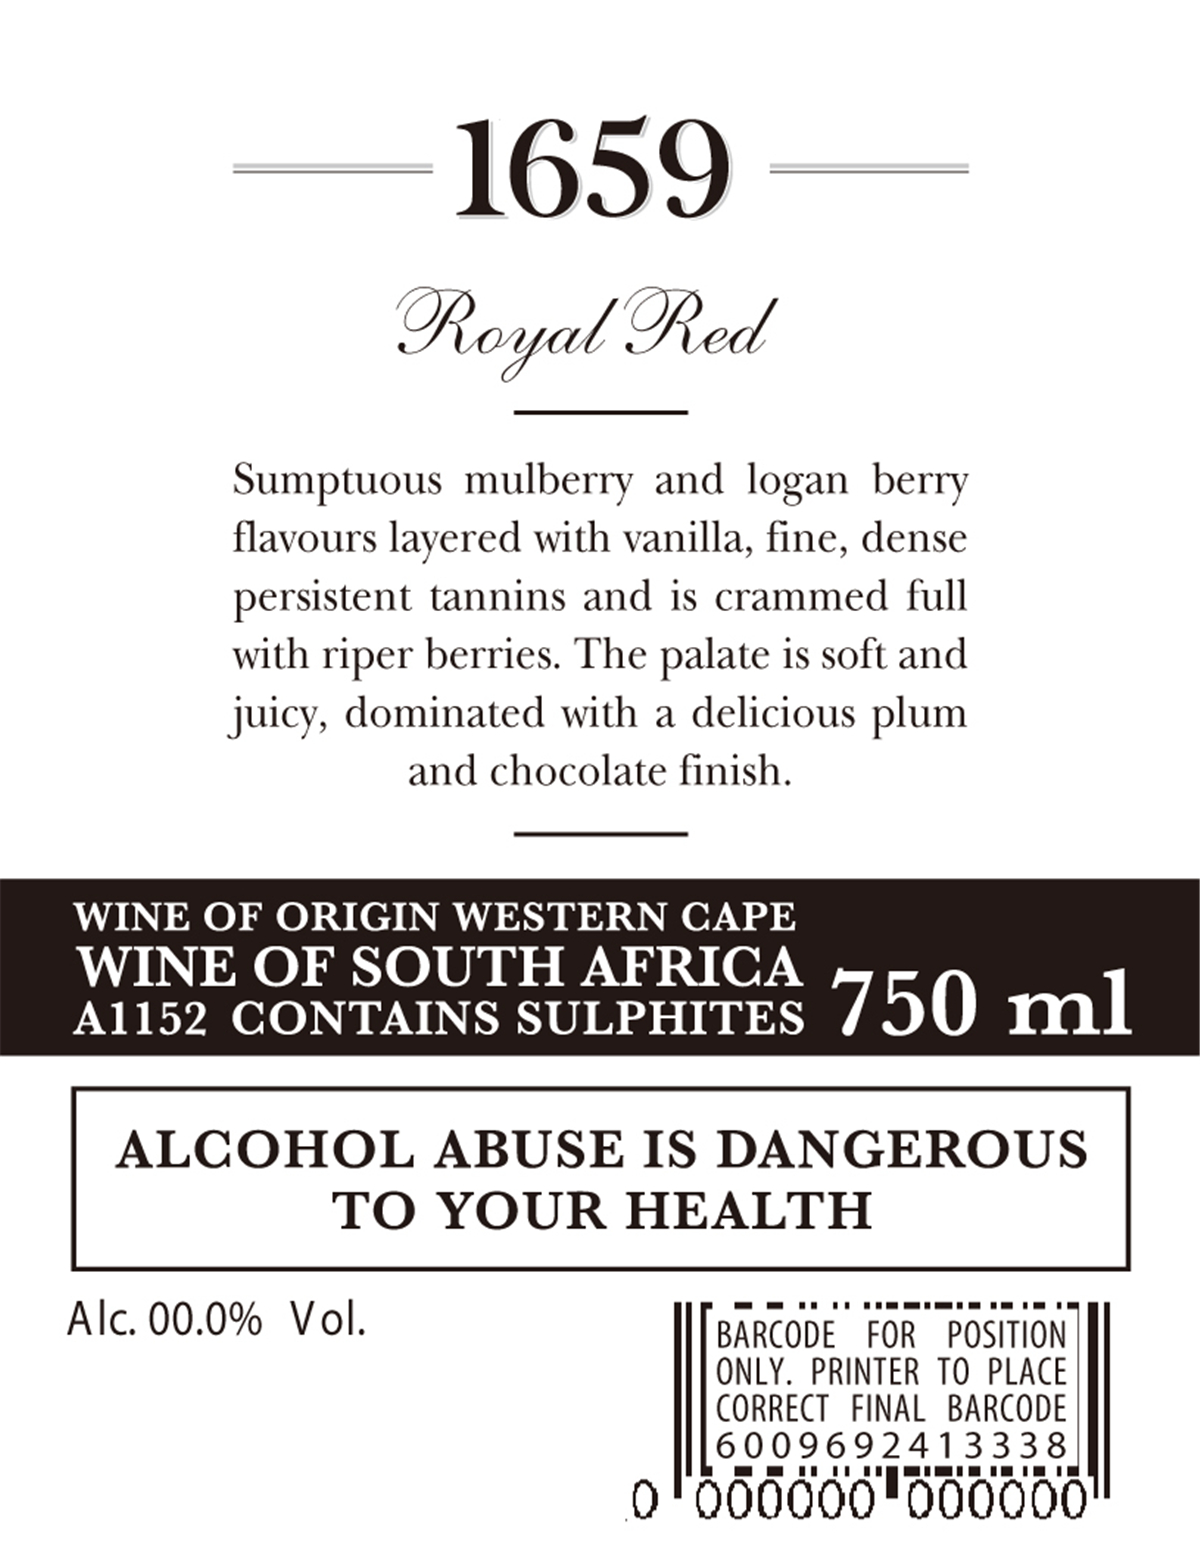 南非西开普猎豹酒庄1659混酿皇家干红葡萄酒 